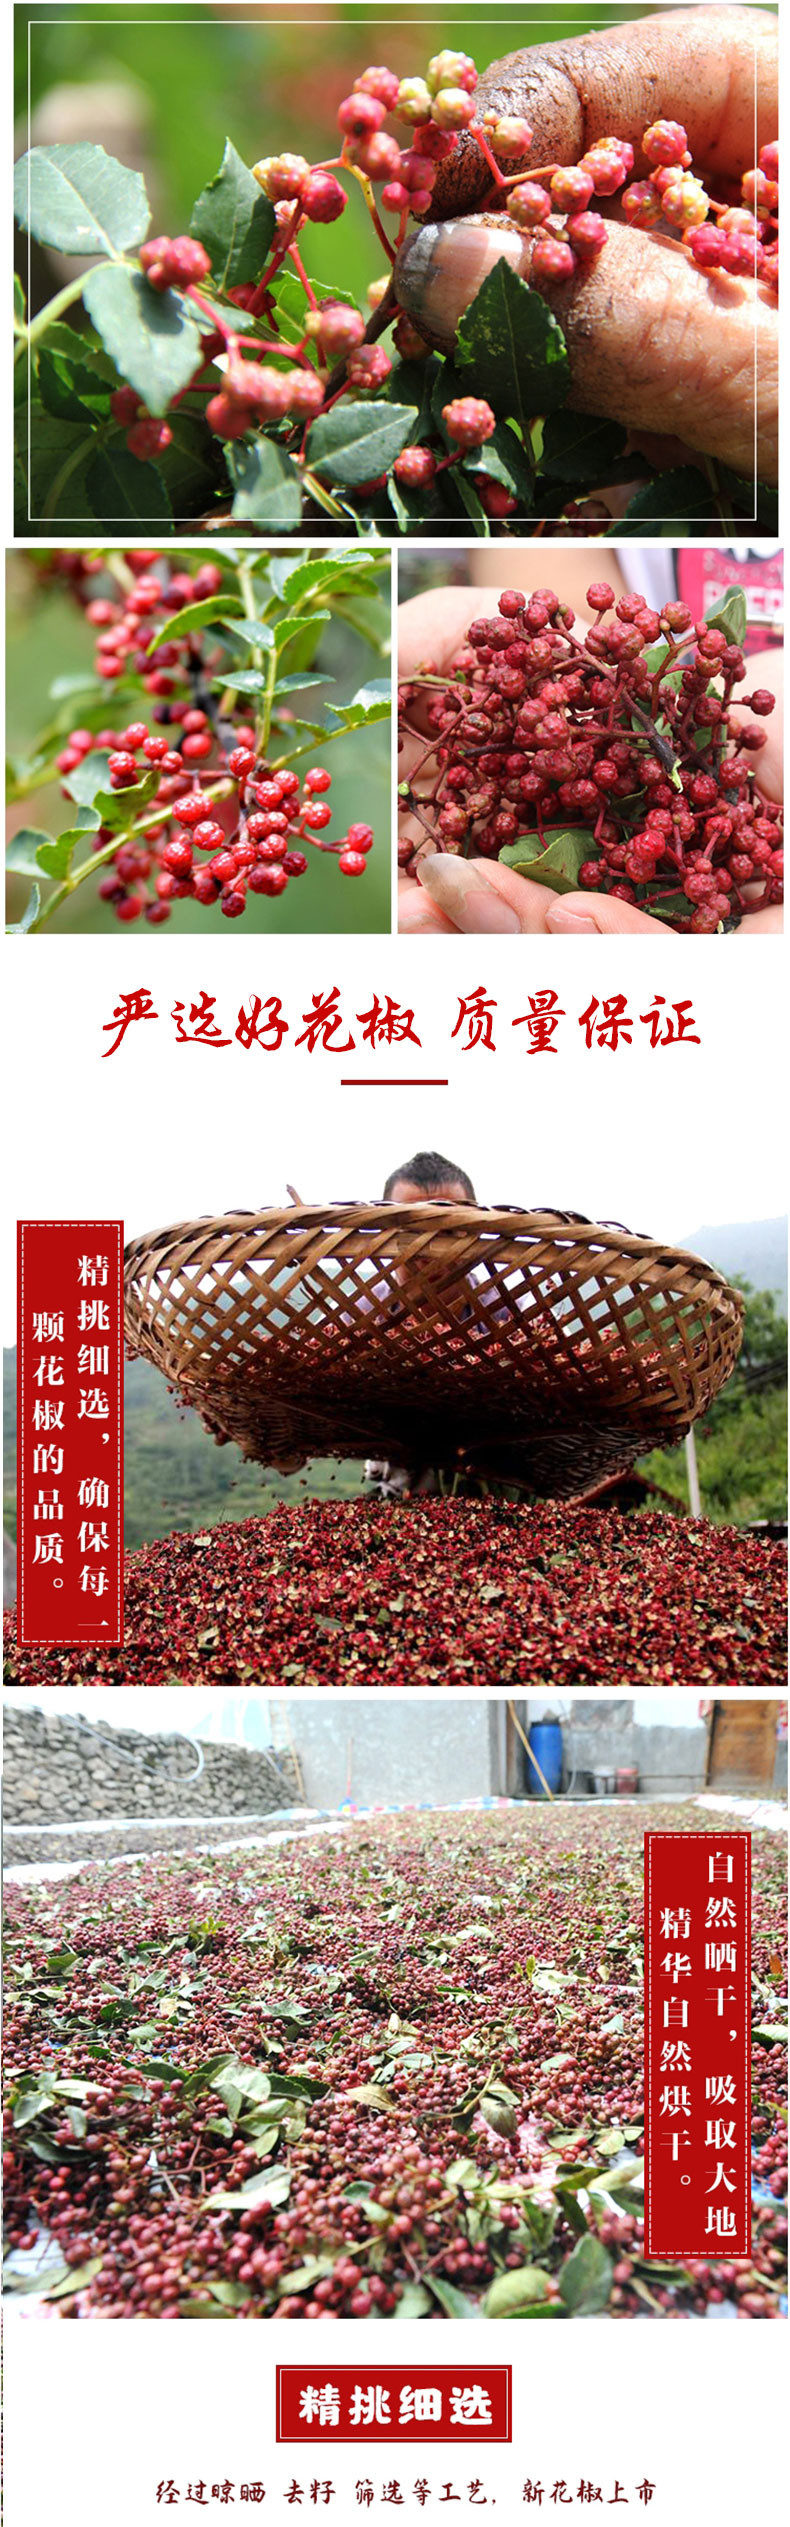 农家自产 太行山南寨大红袍花椒500克 花椒藤椒麻椒调味品